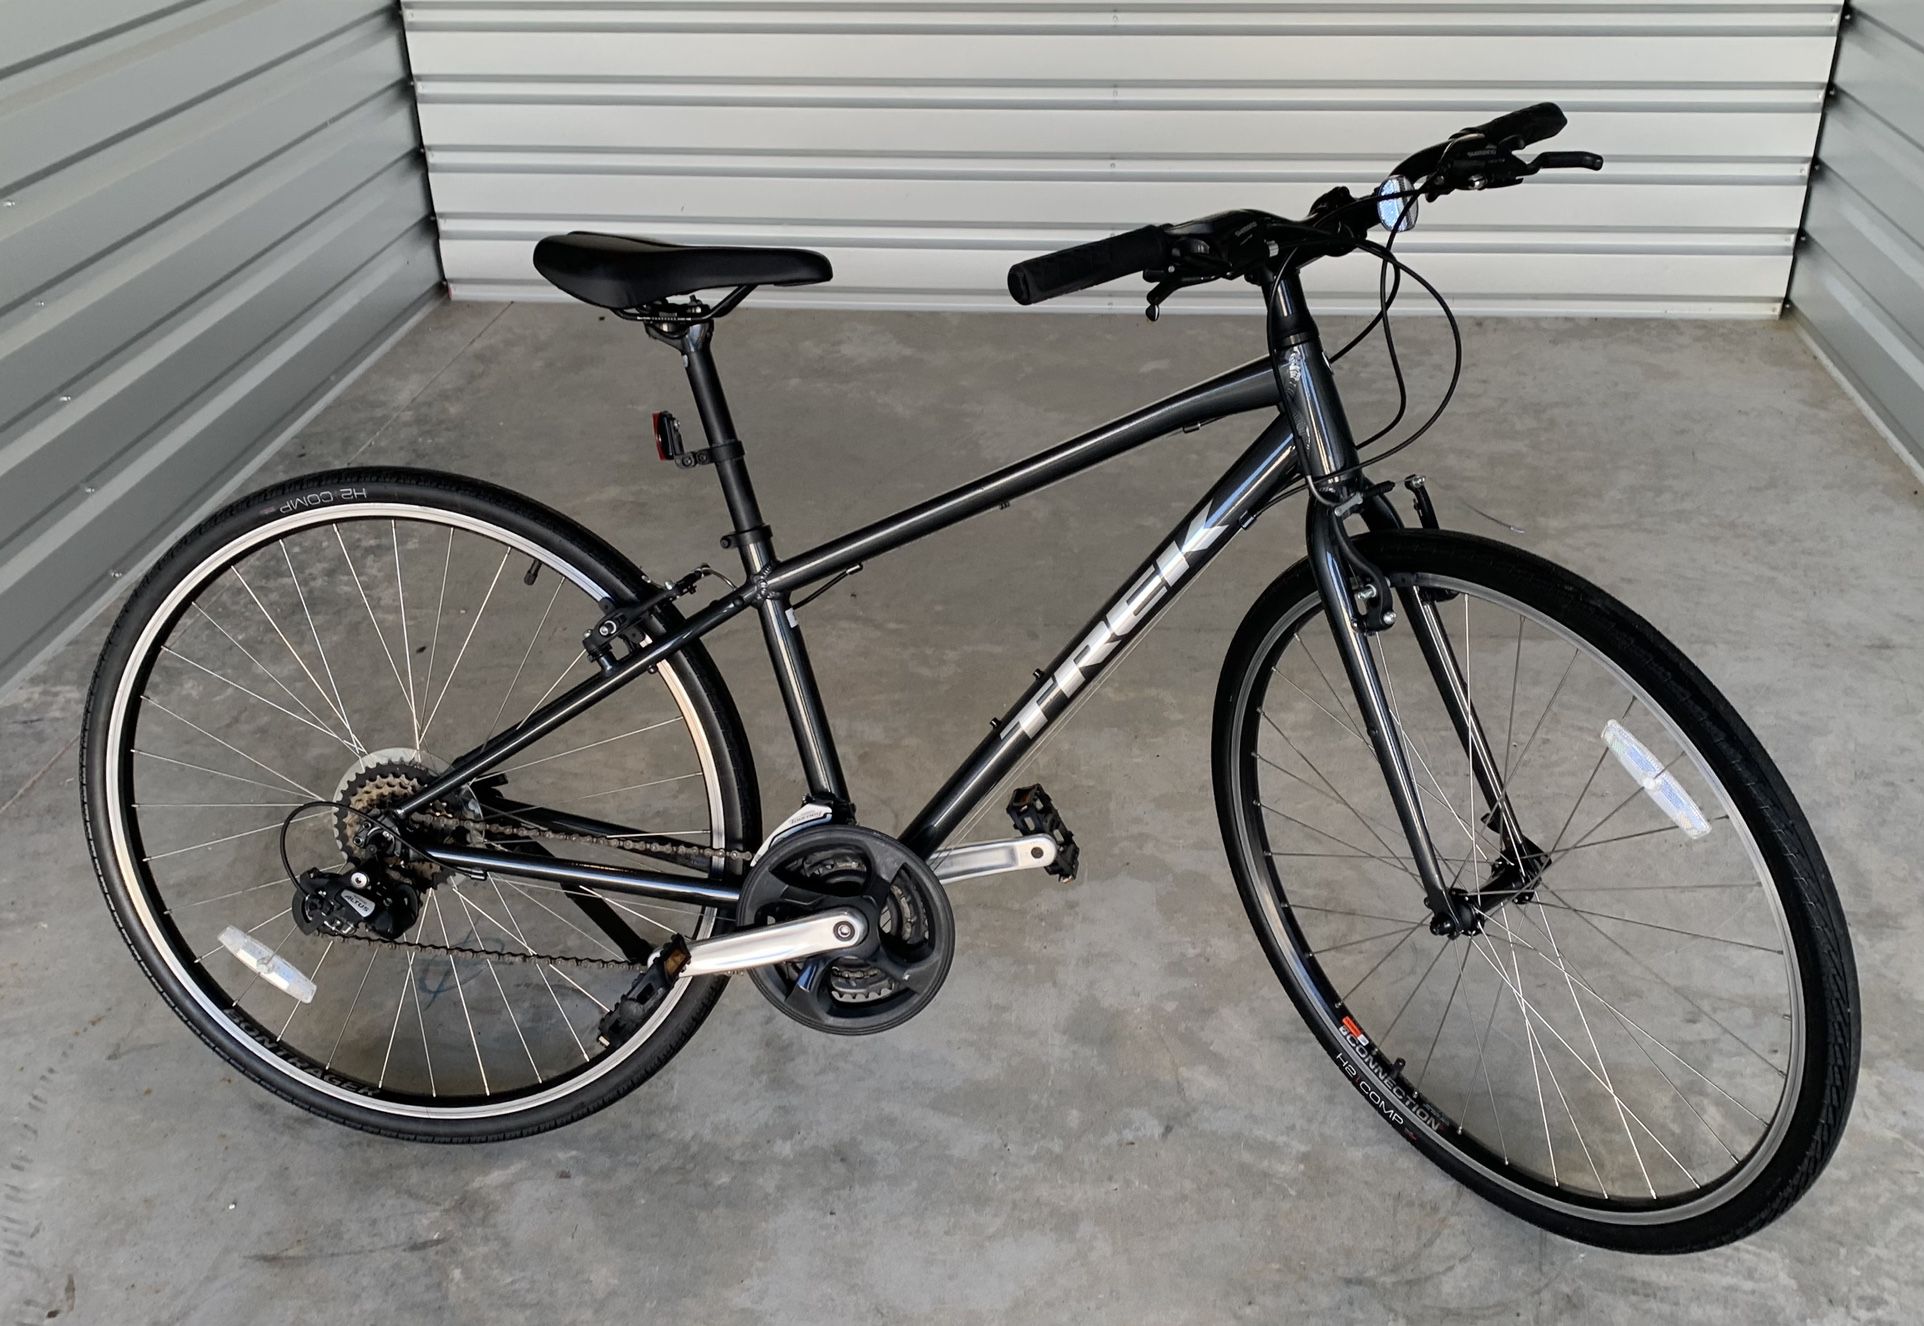 Trek FX 1 is a hybrid bike with a lightweight aluminum frame 